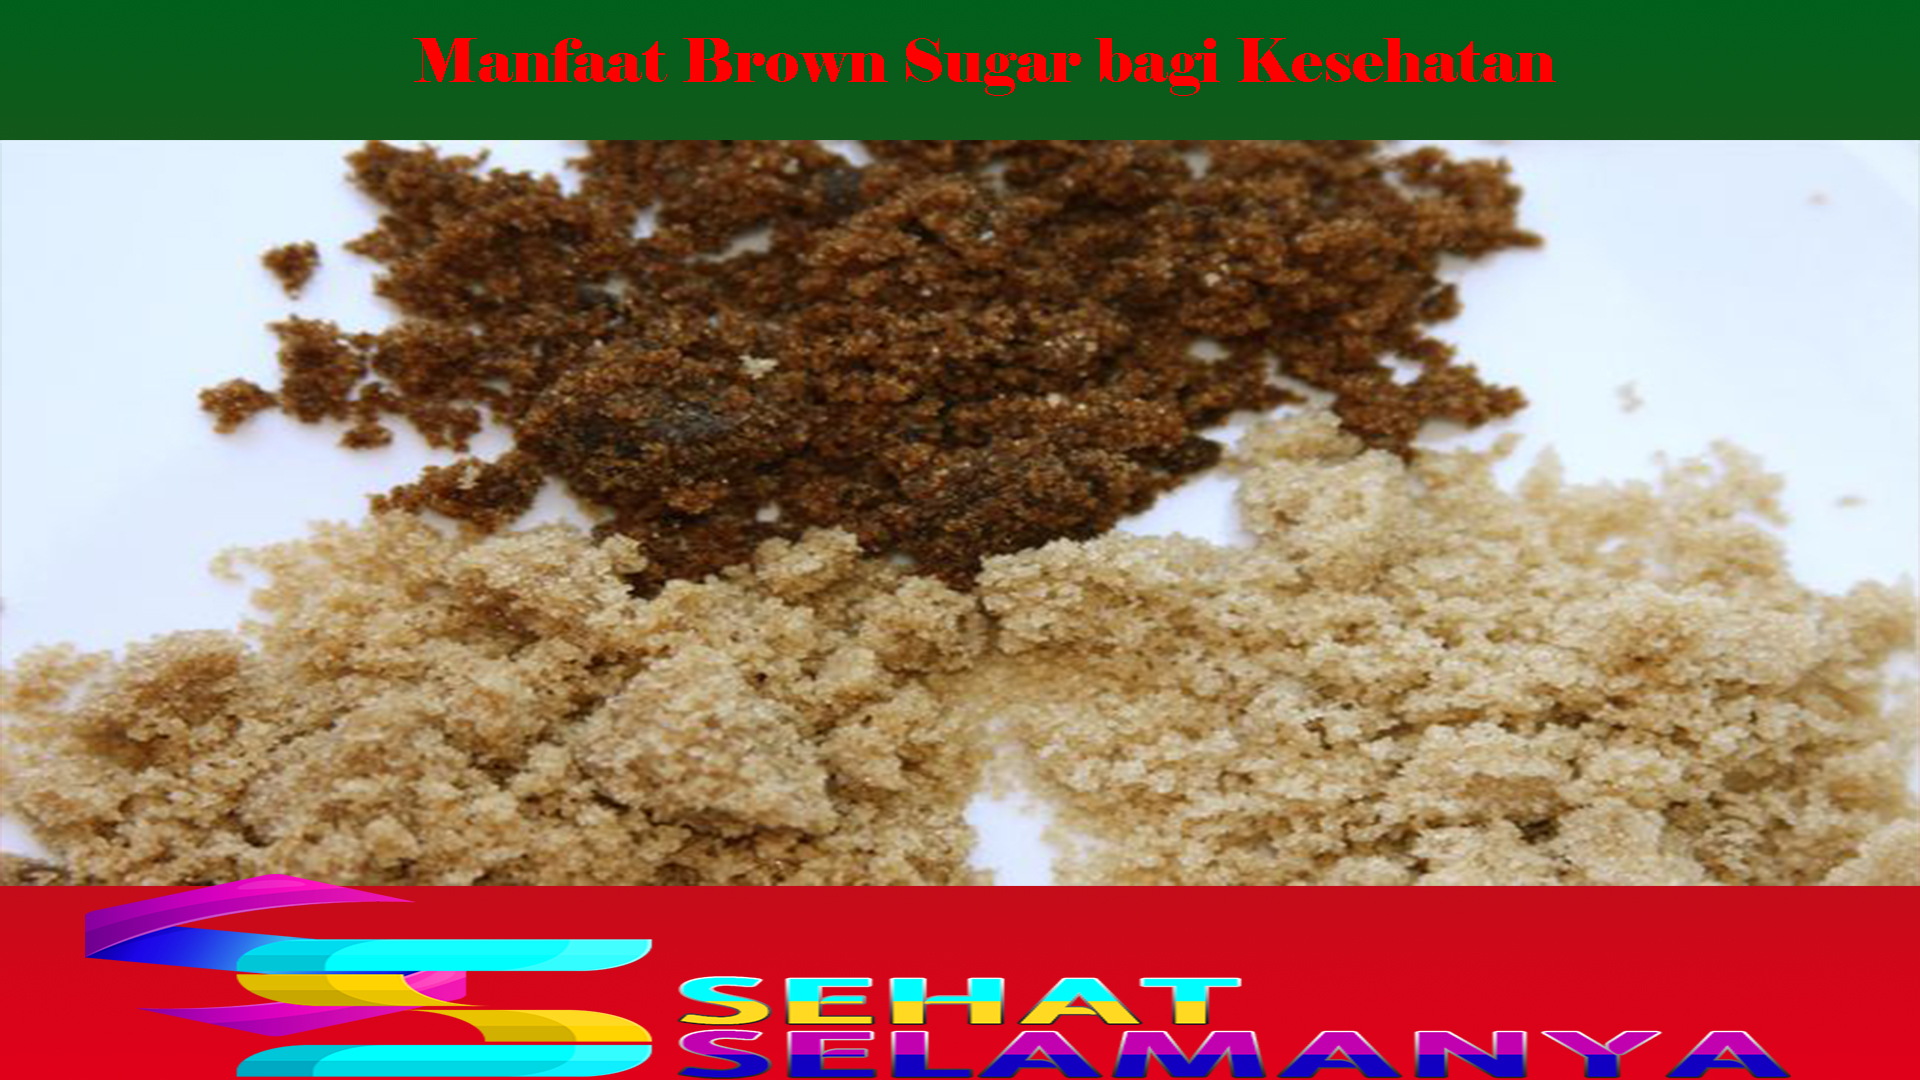 Manfaat Brown Sugar bagi Kesehatan